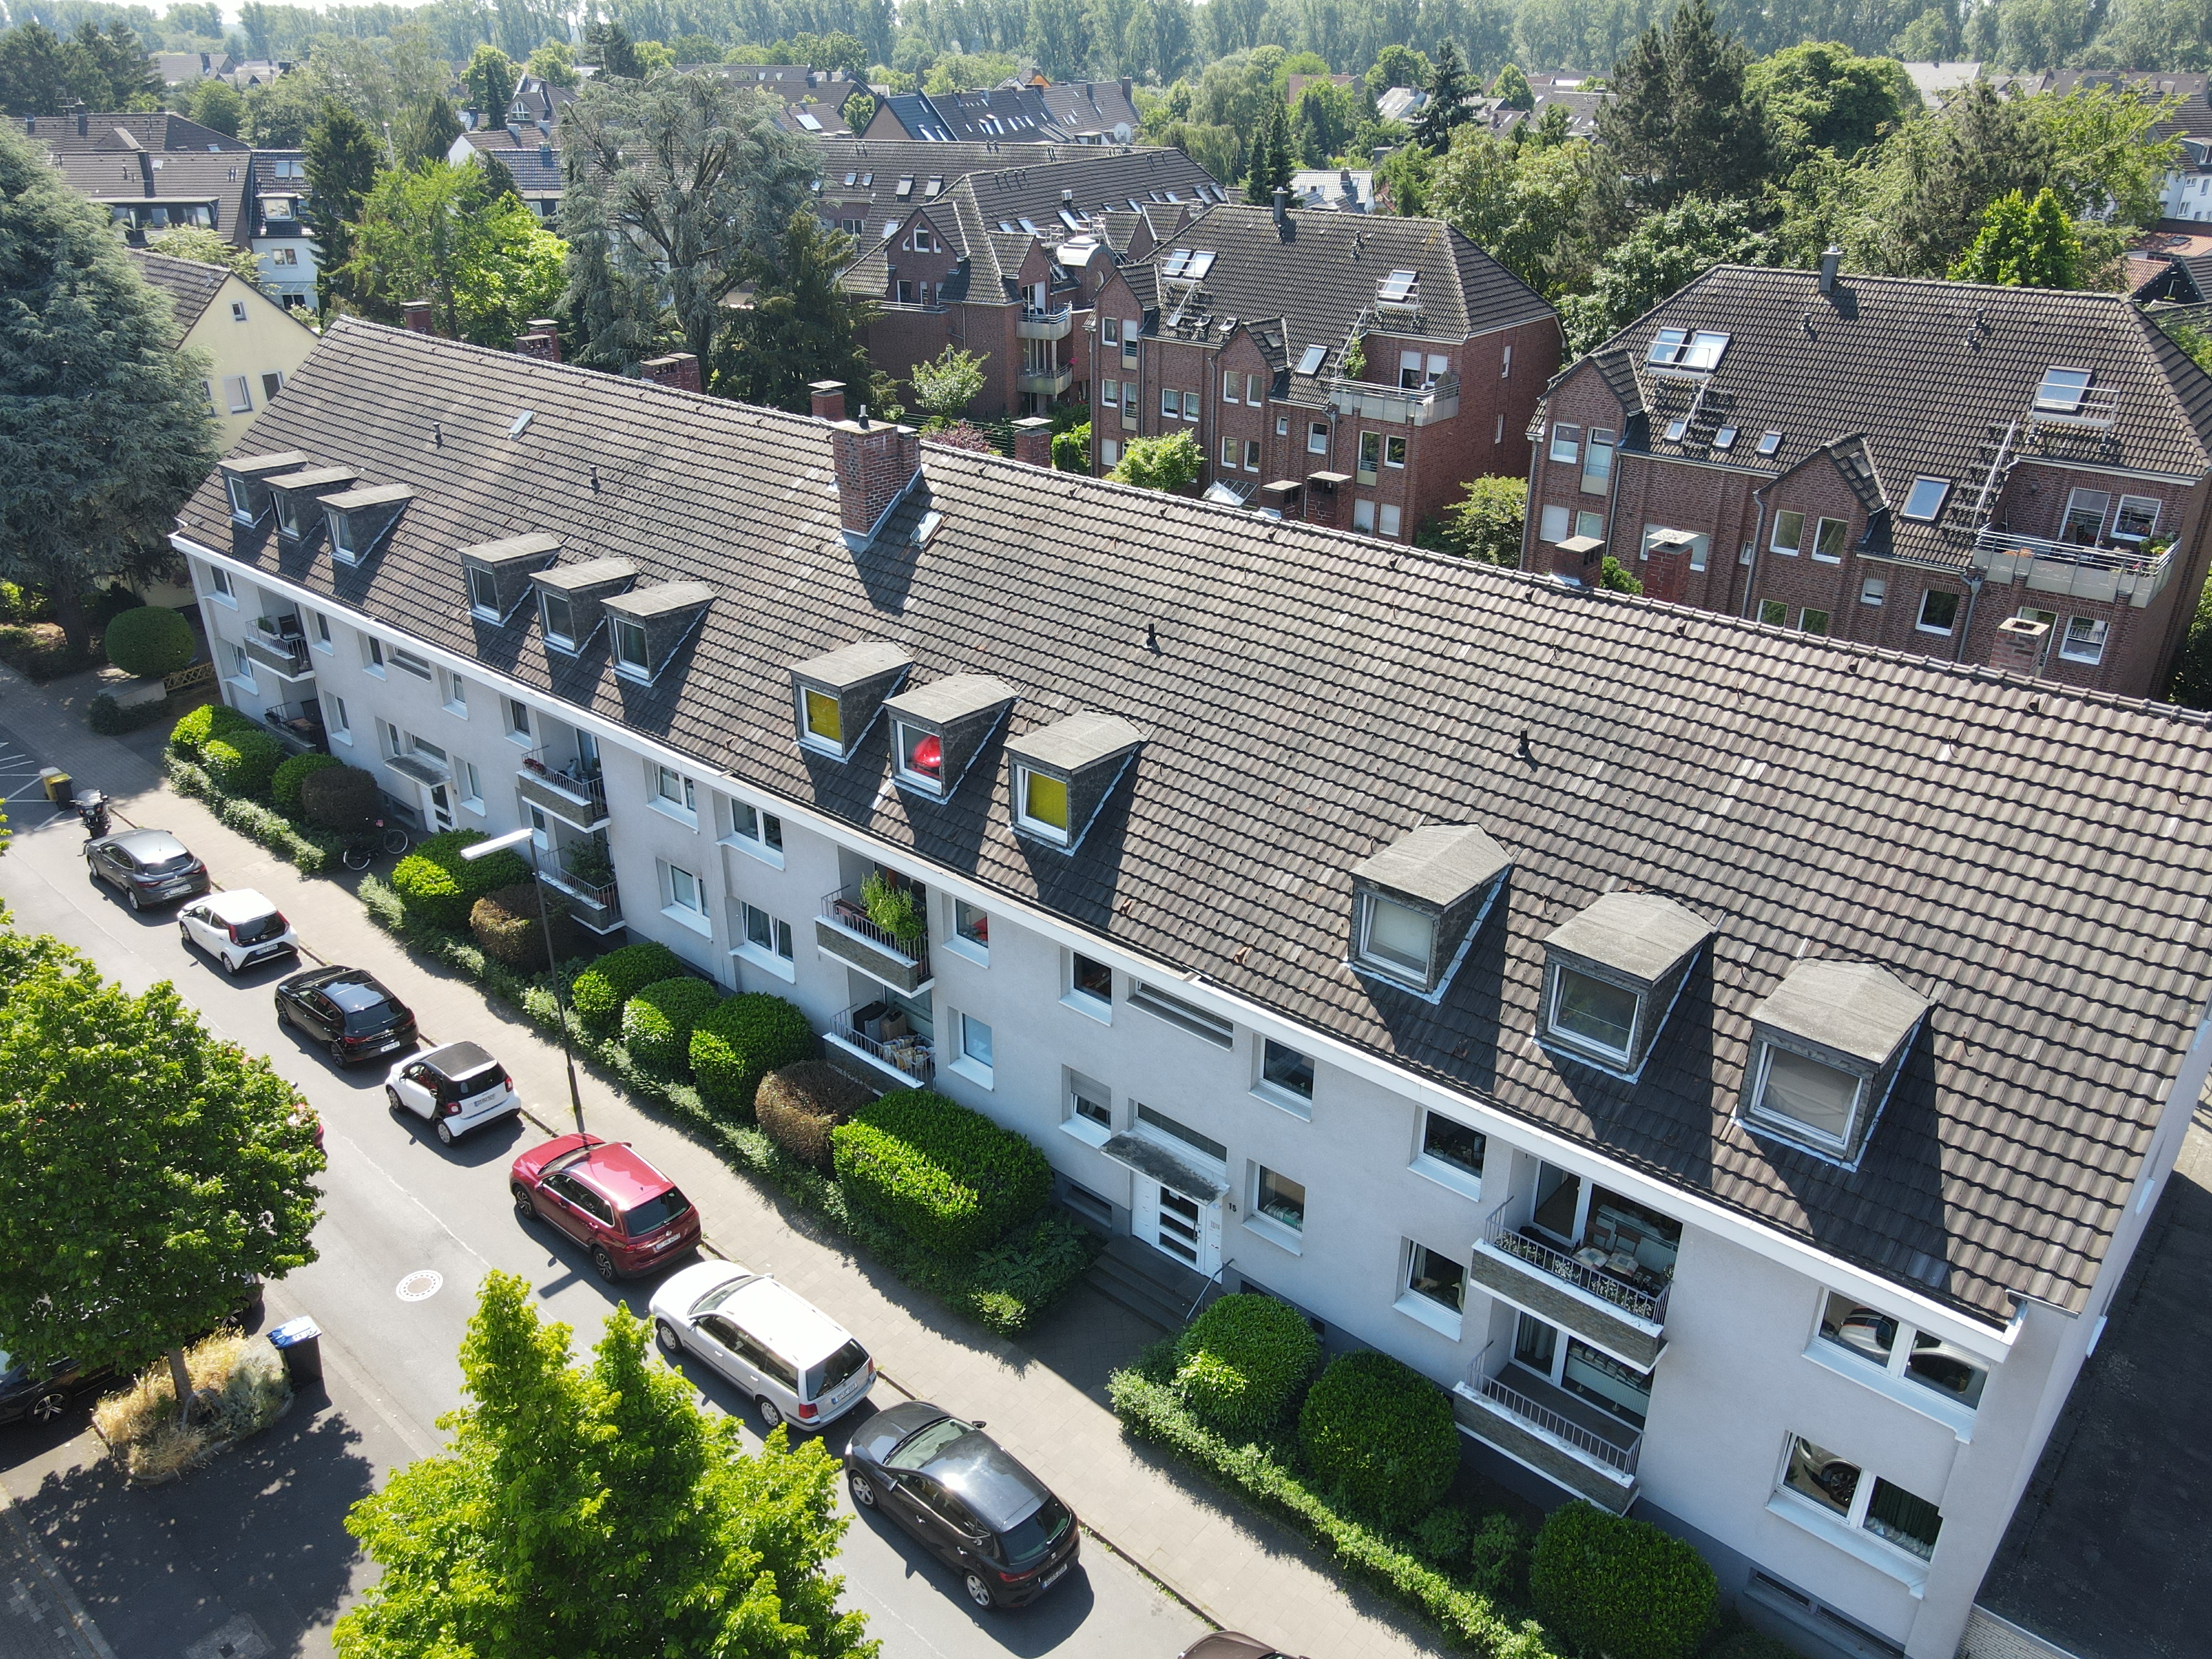 2 sehr gepflegte Mehrfamilienhäuser in top Lage von Urdenbach